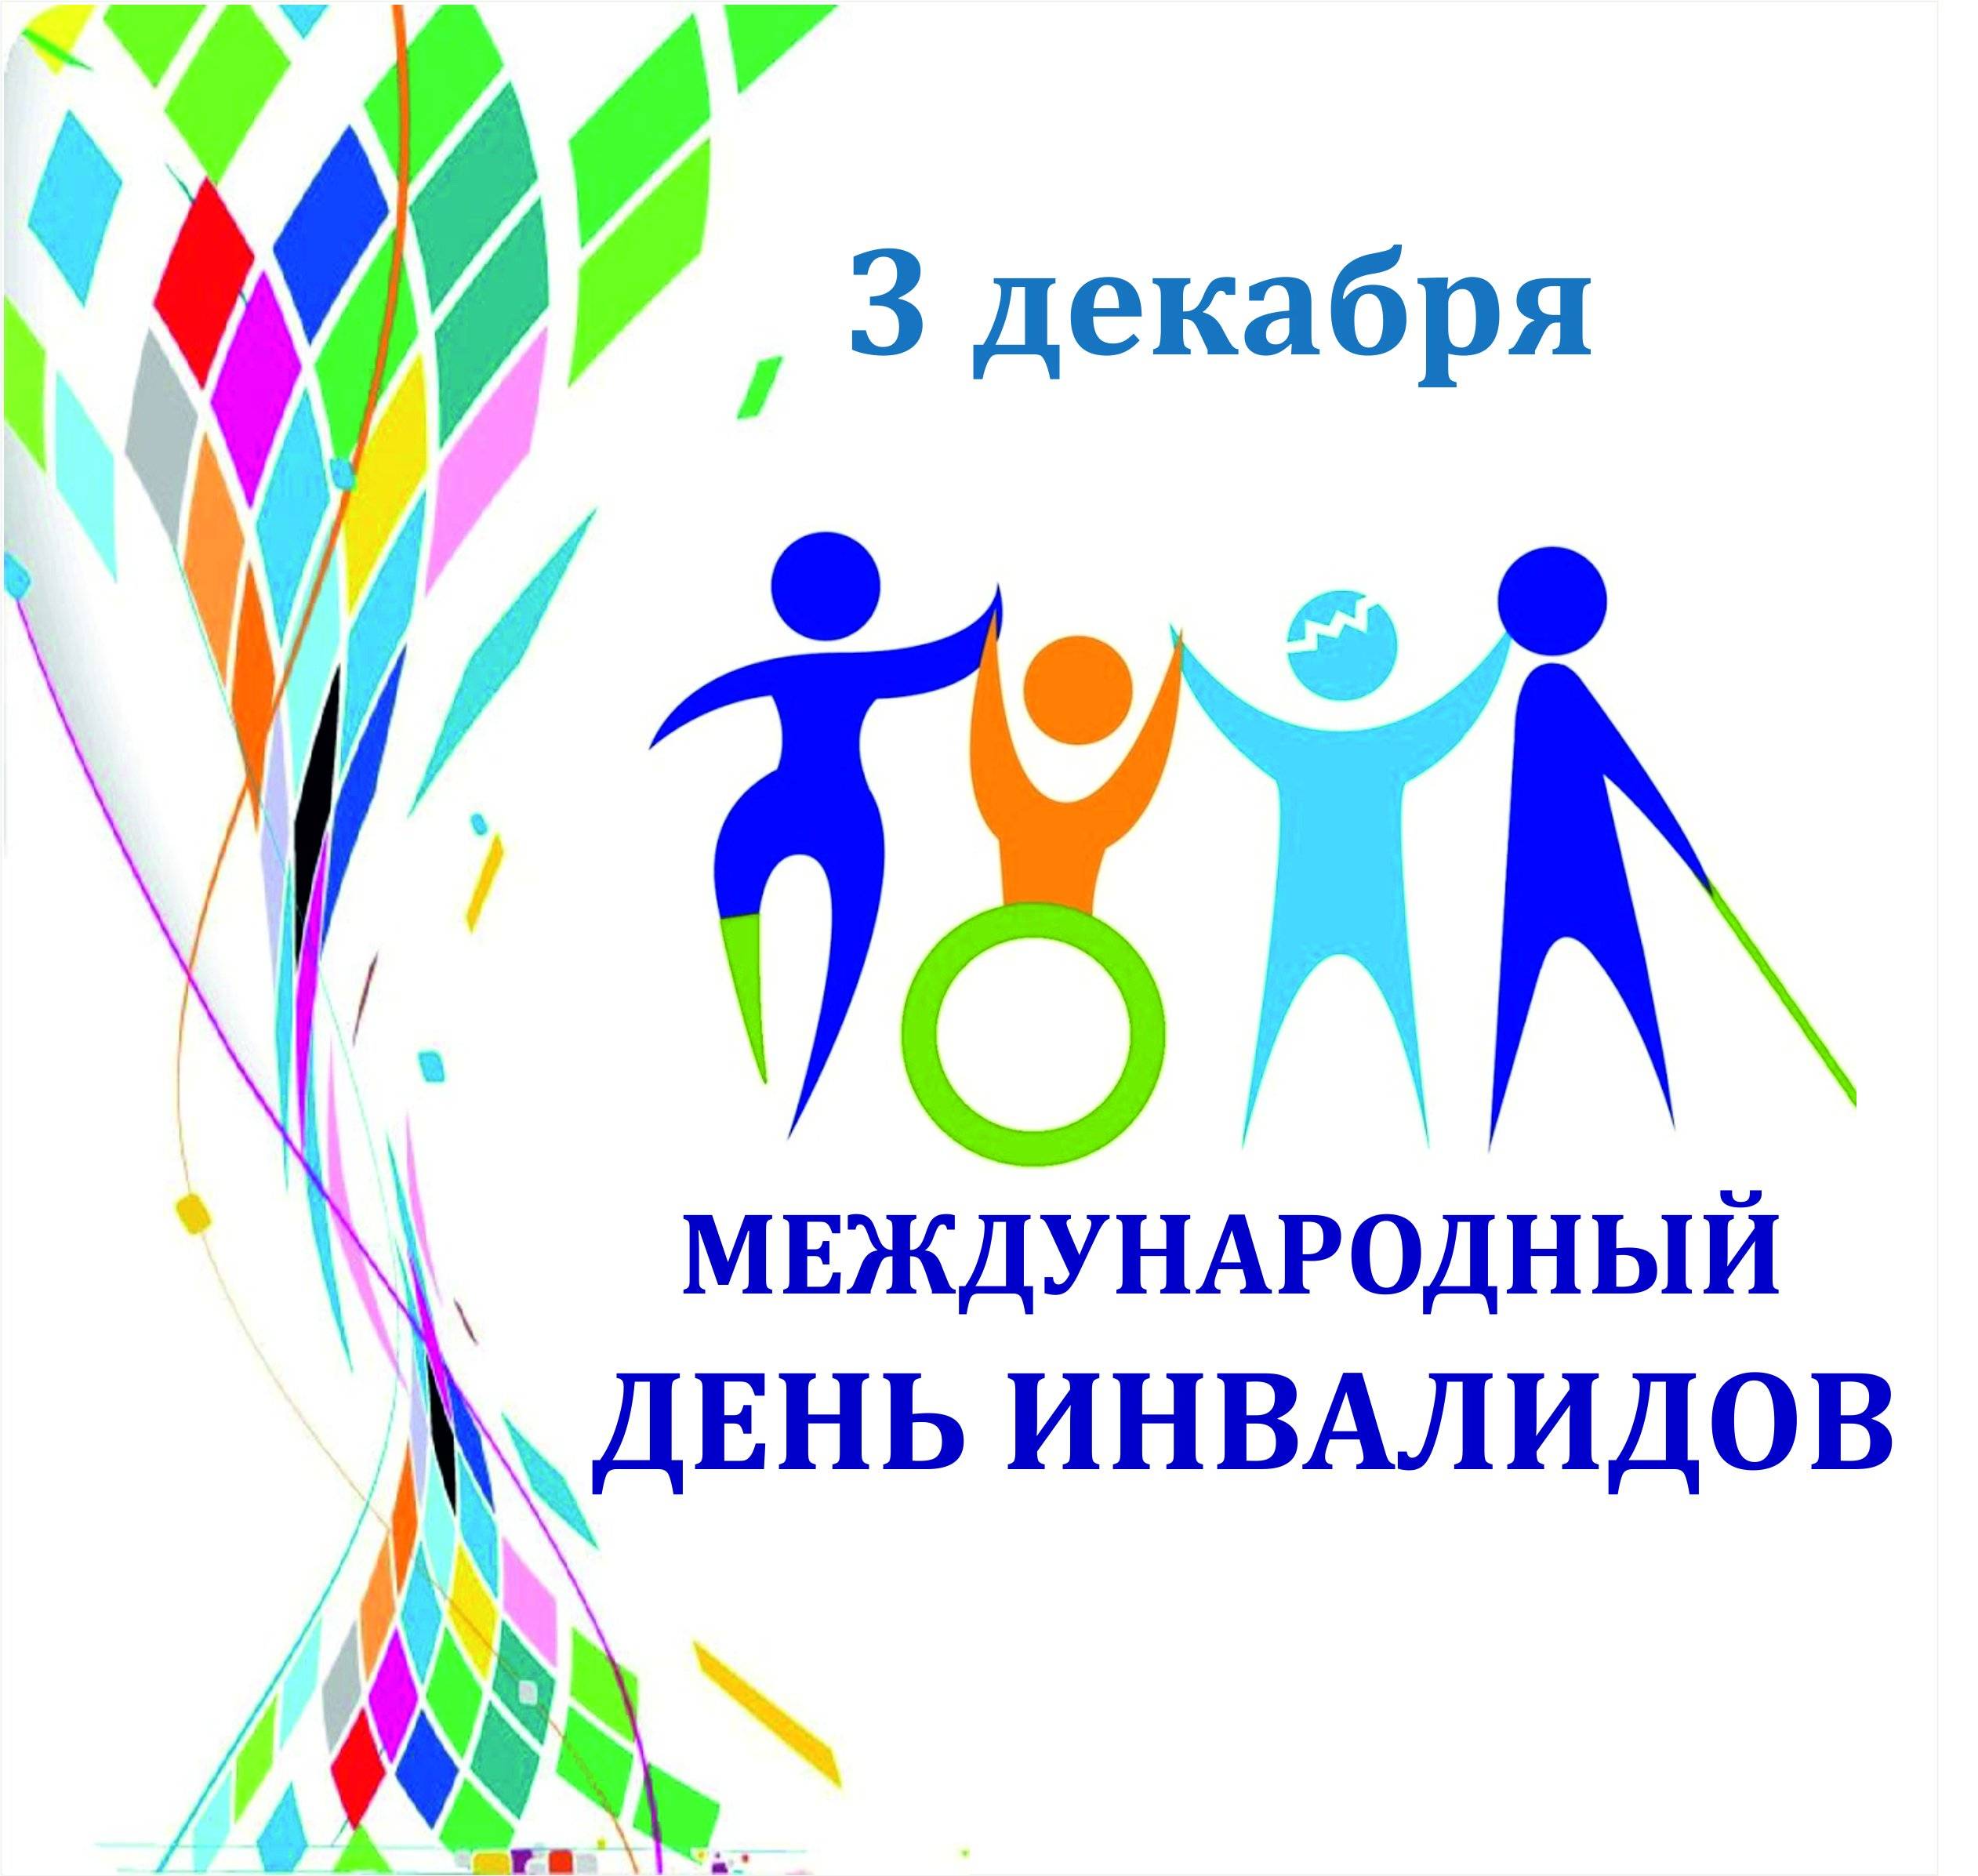 Международный день инвалидов: история праздника